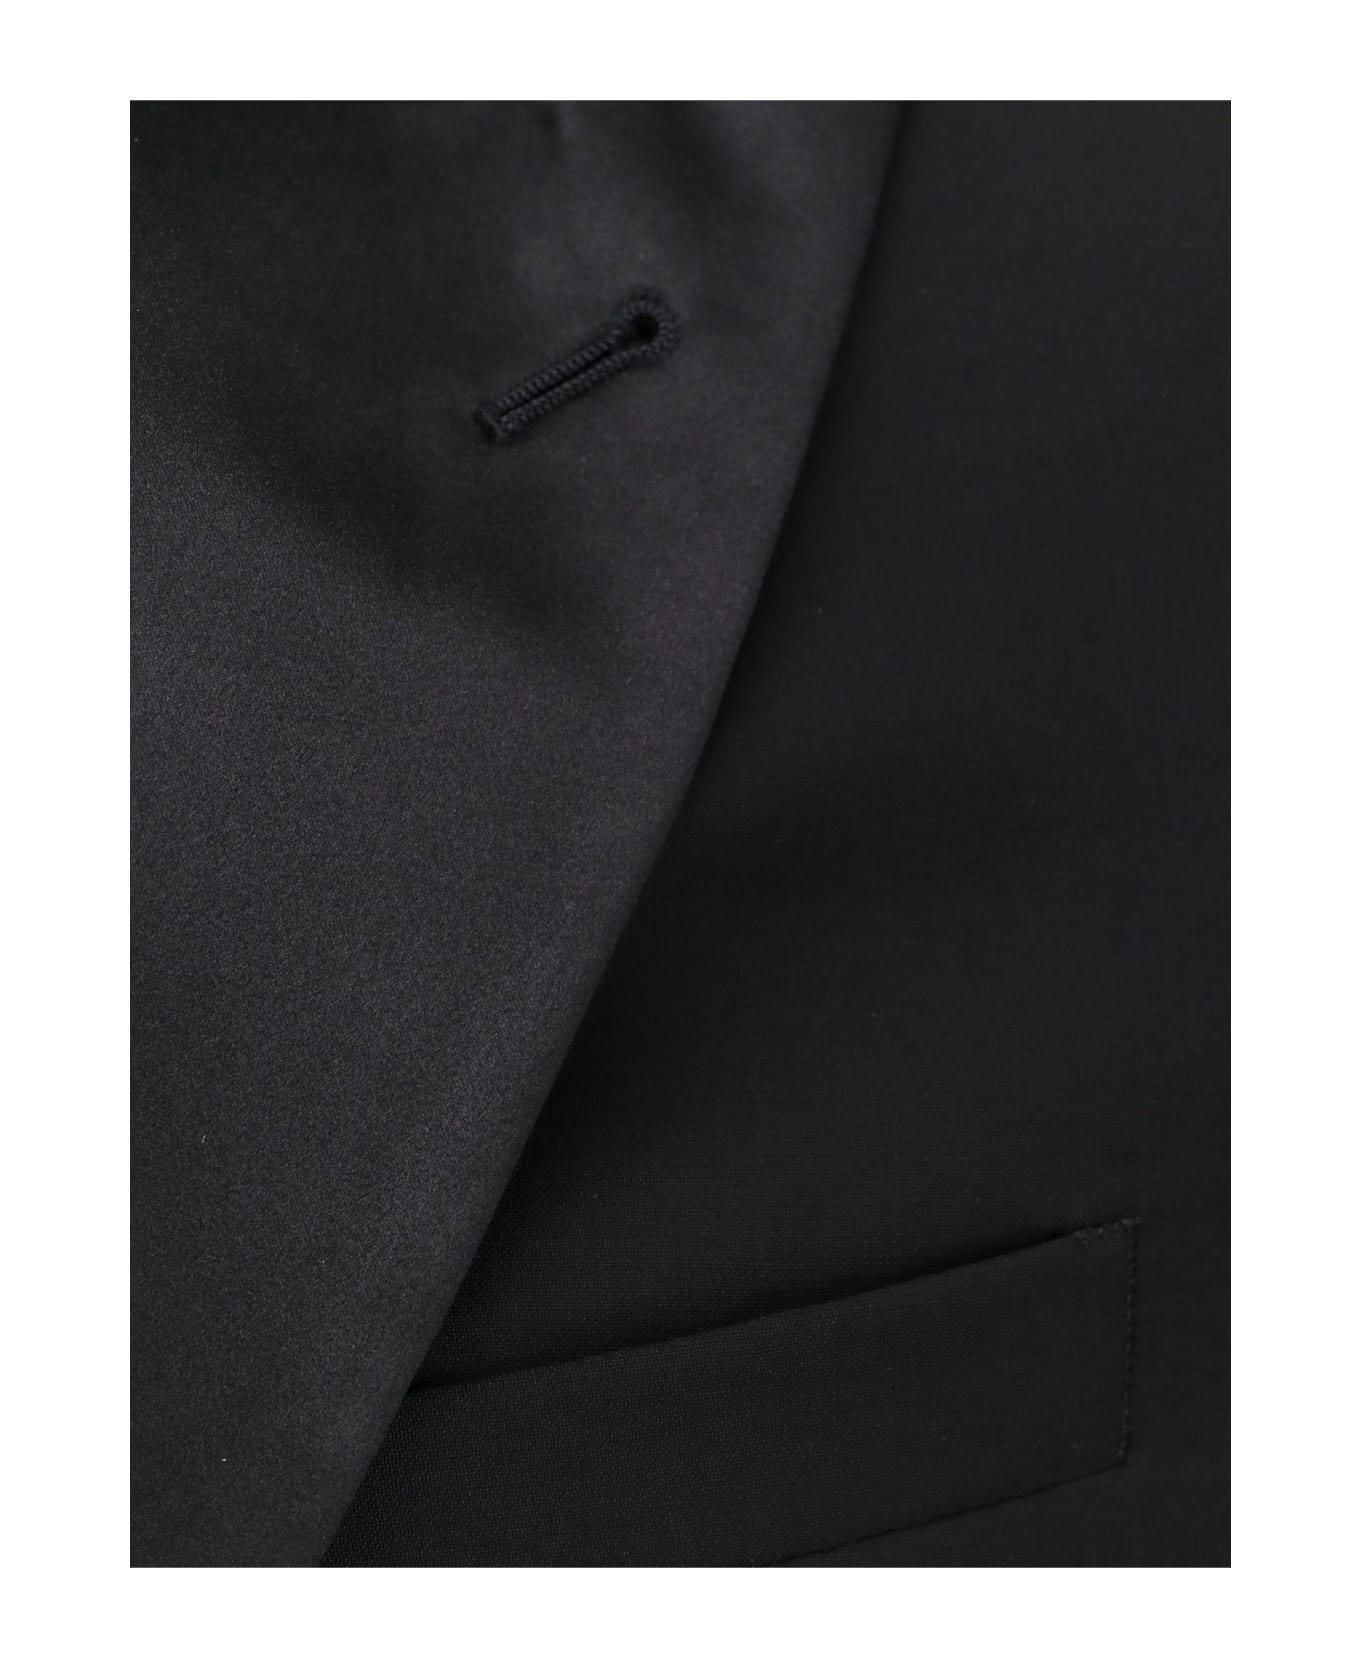 Giorgio Armani Tuxedo - Black スーツ